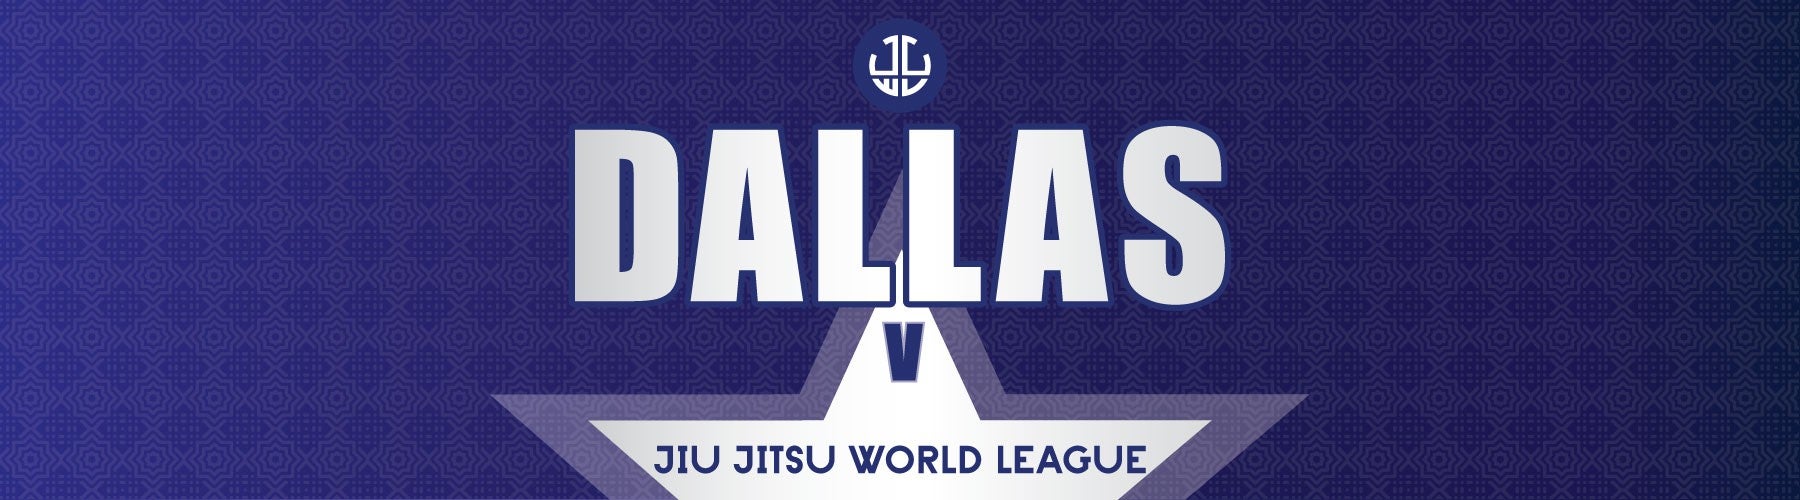 Jiu Jitsu World League